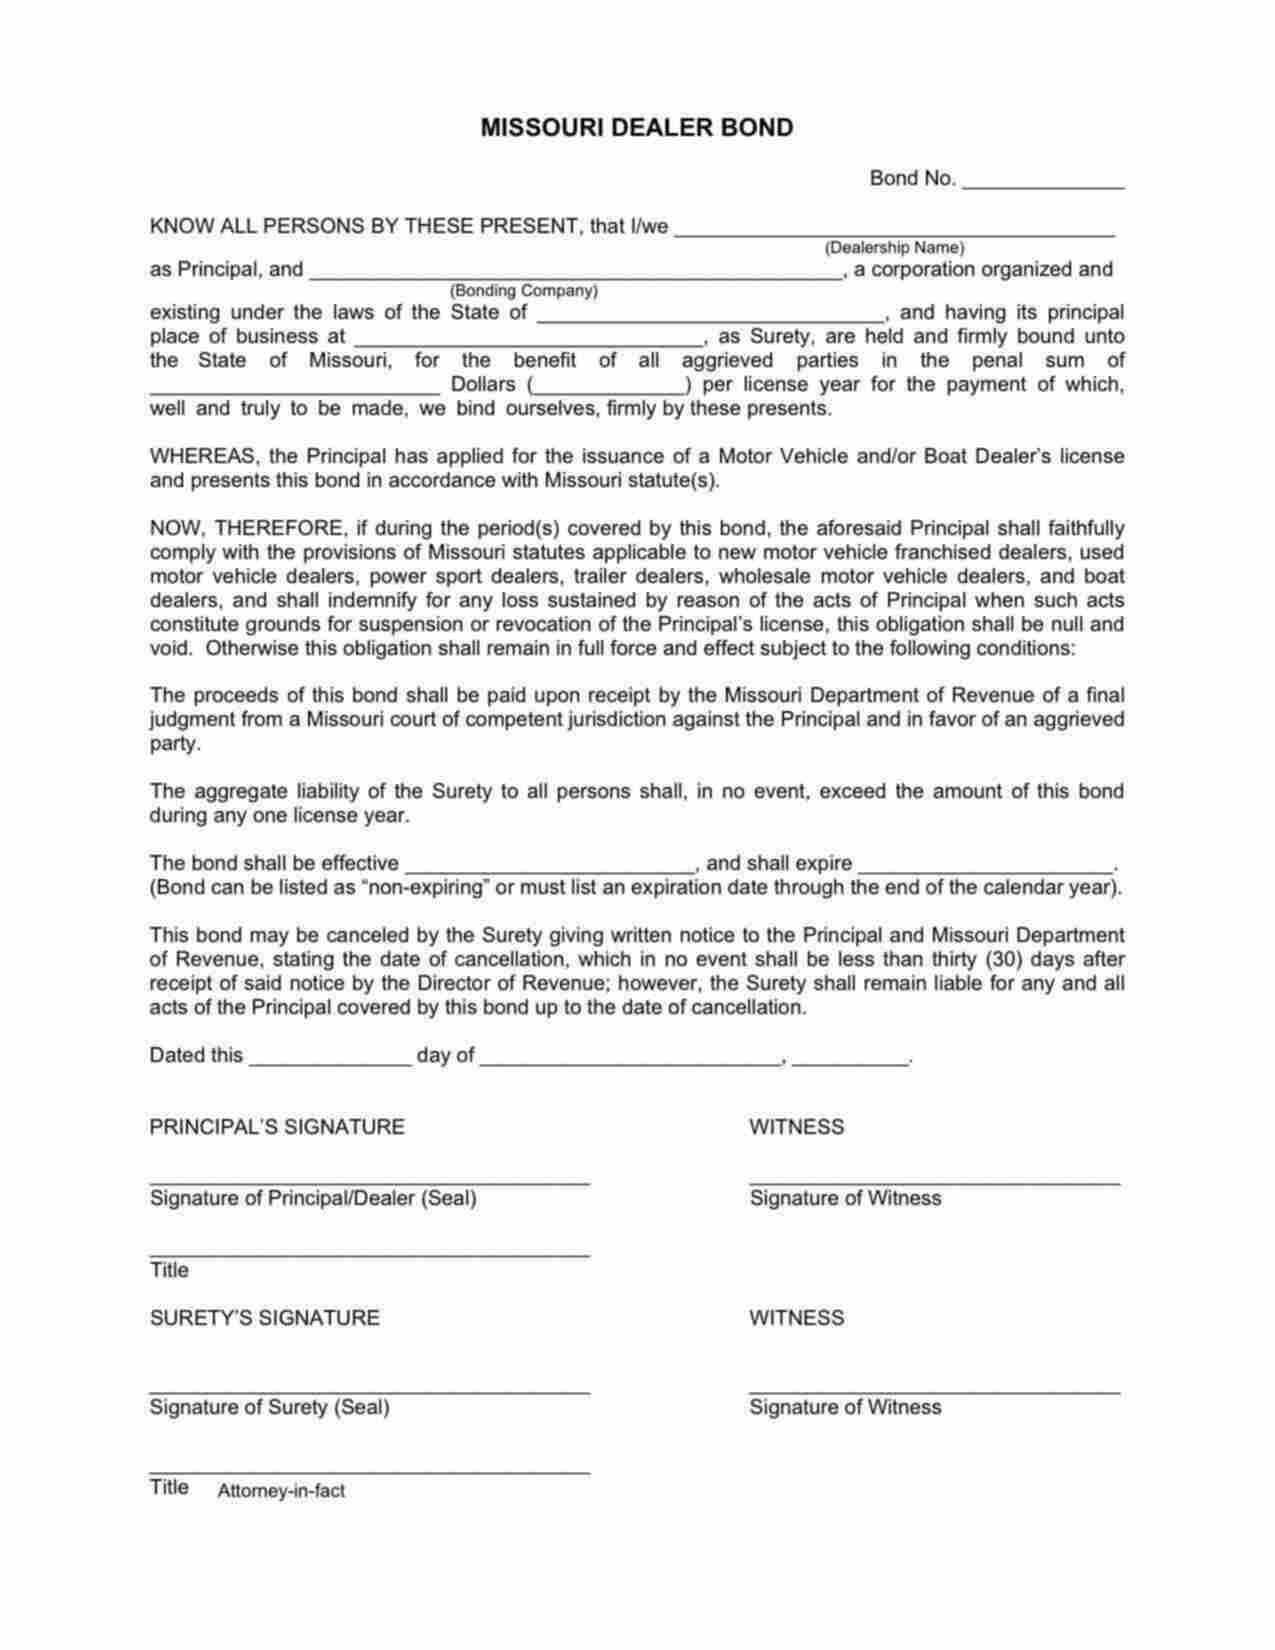 Missouri Motor Vehicle and/or Boat Dealer's License Bond Form